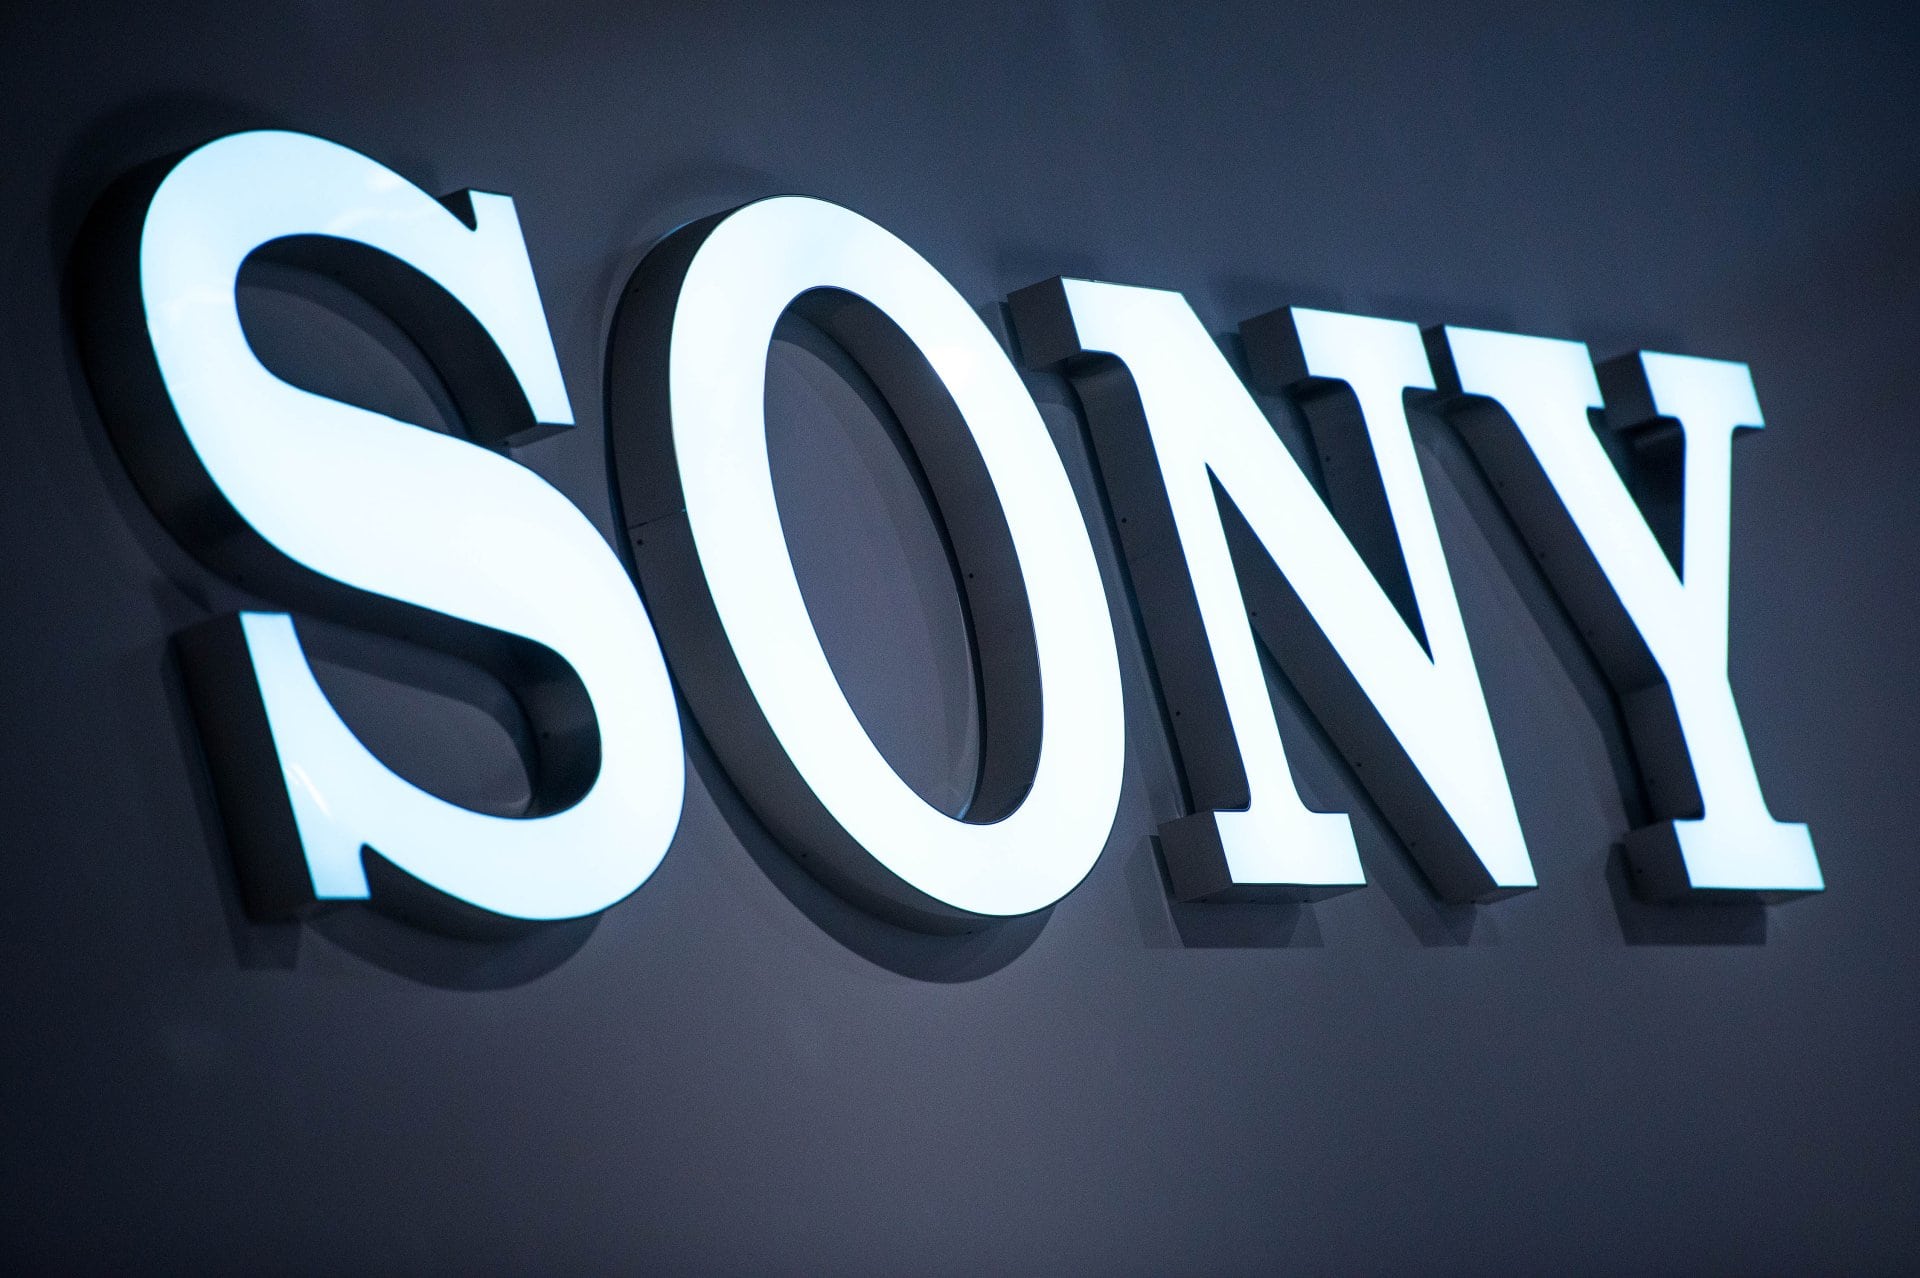 The Sony logo